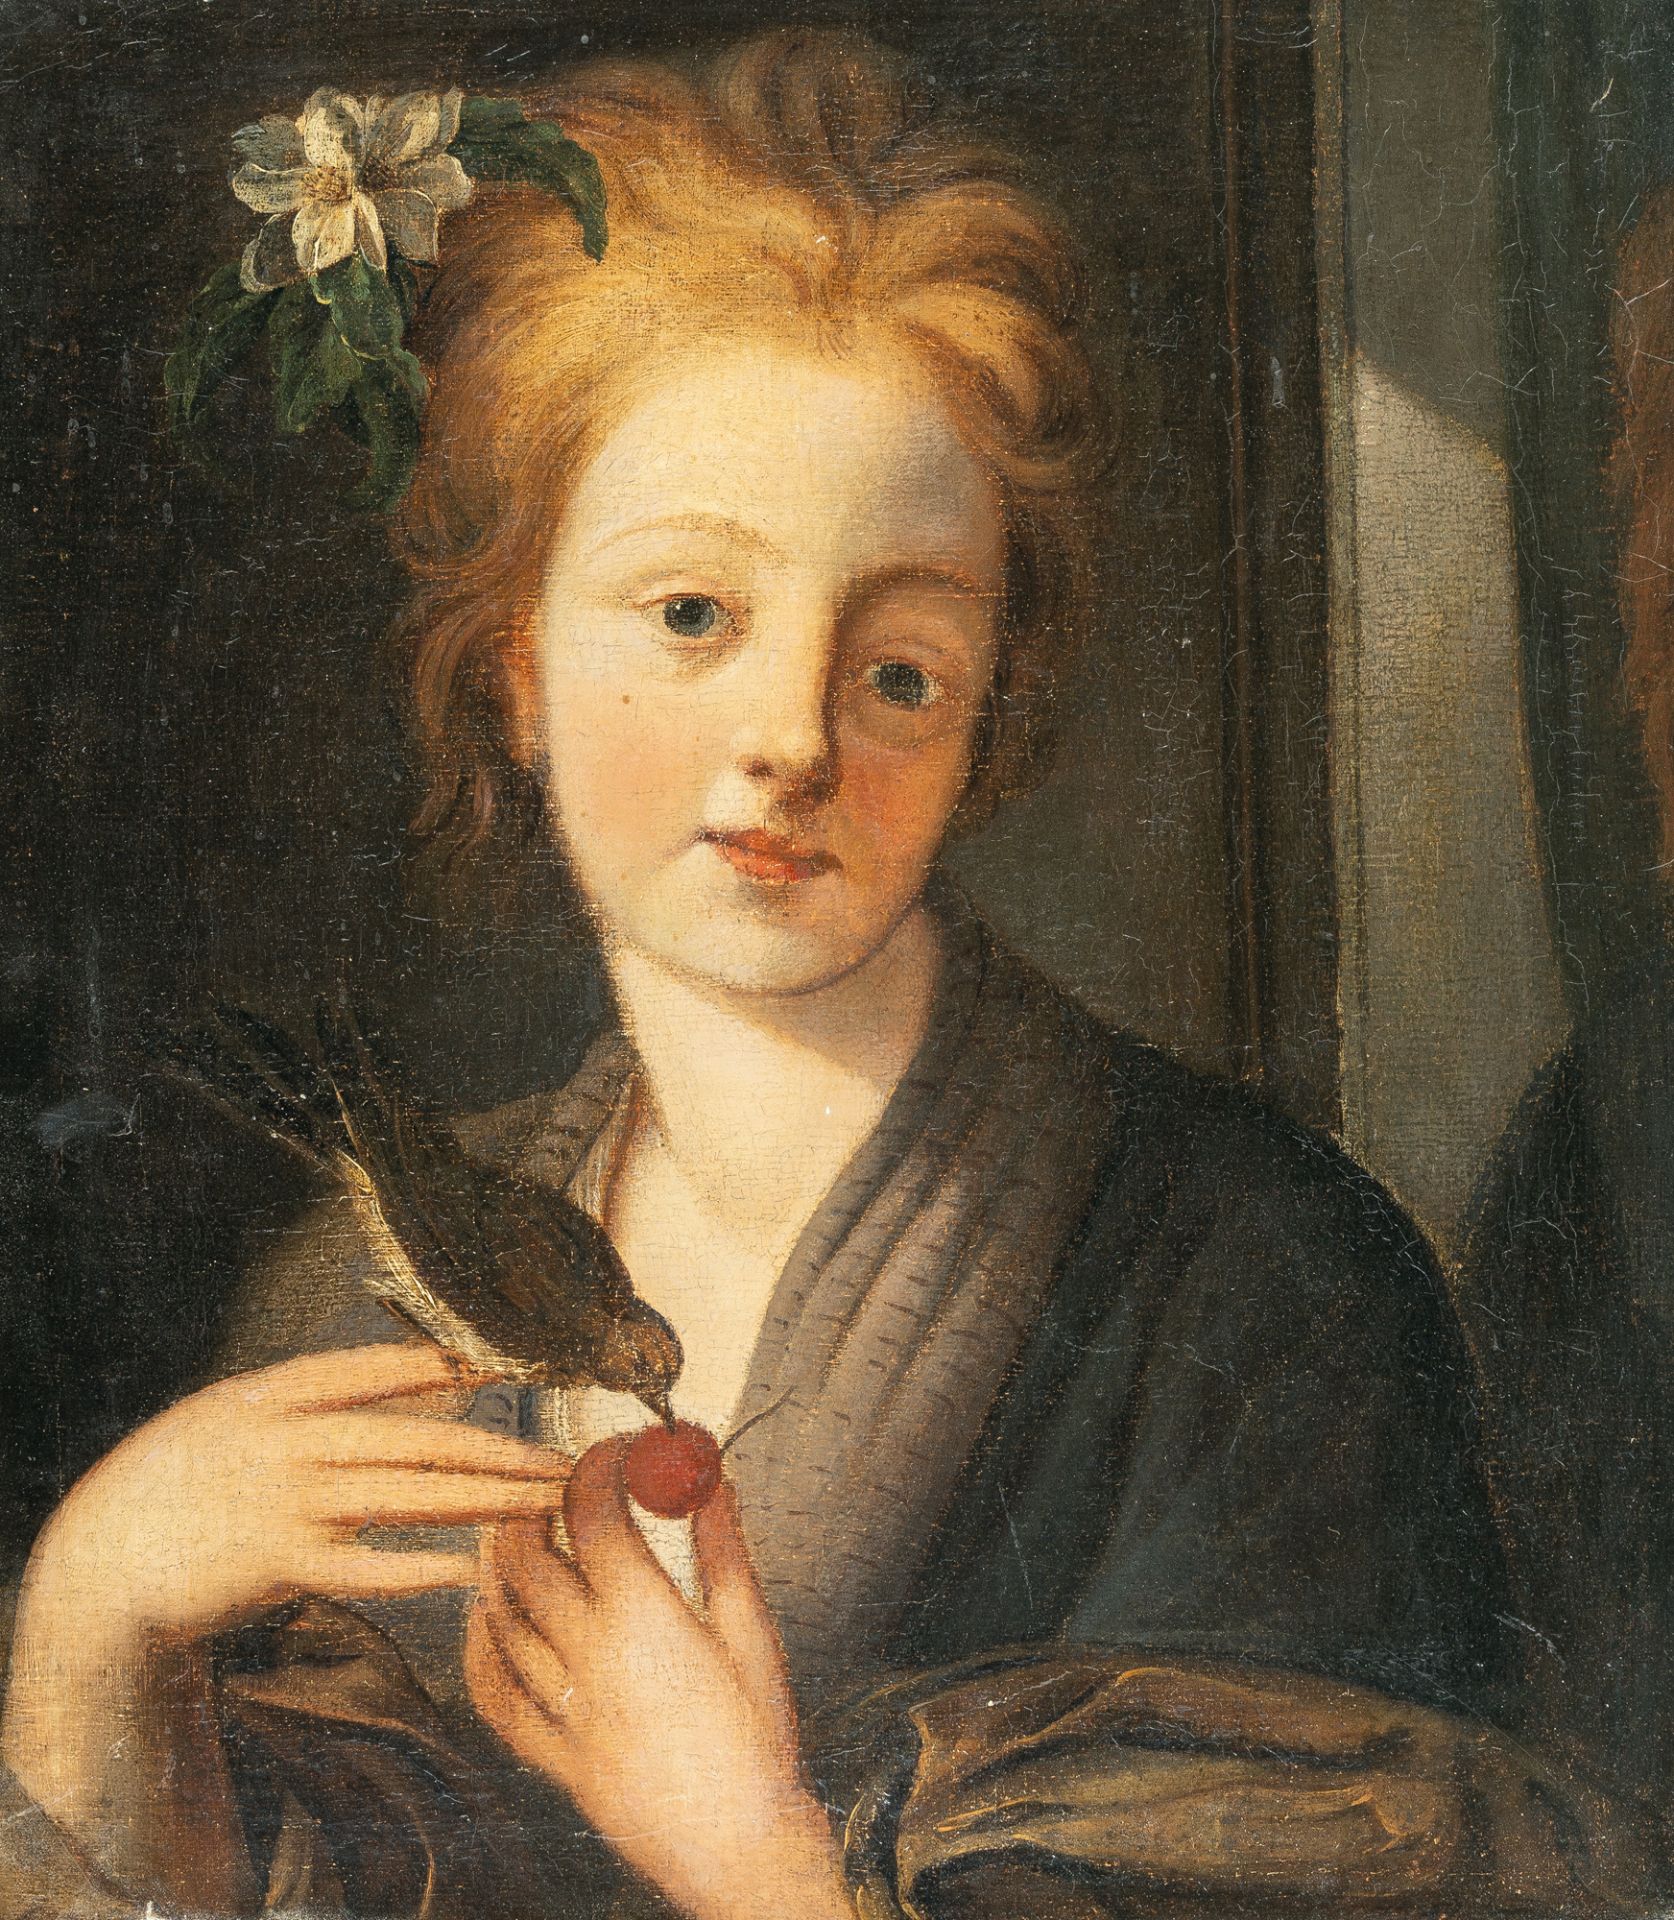 Deutsch – Girl feeding cherries to a bird